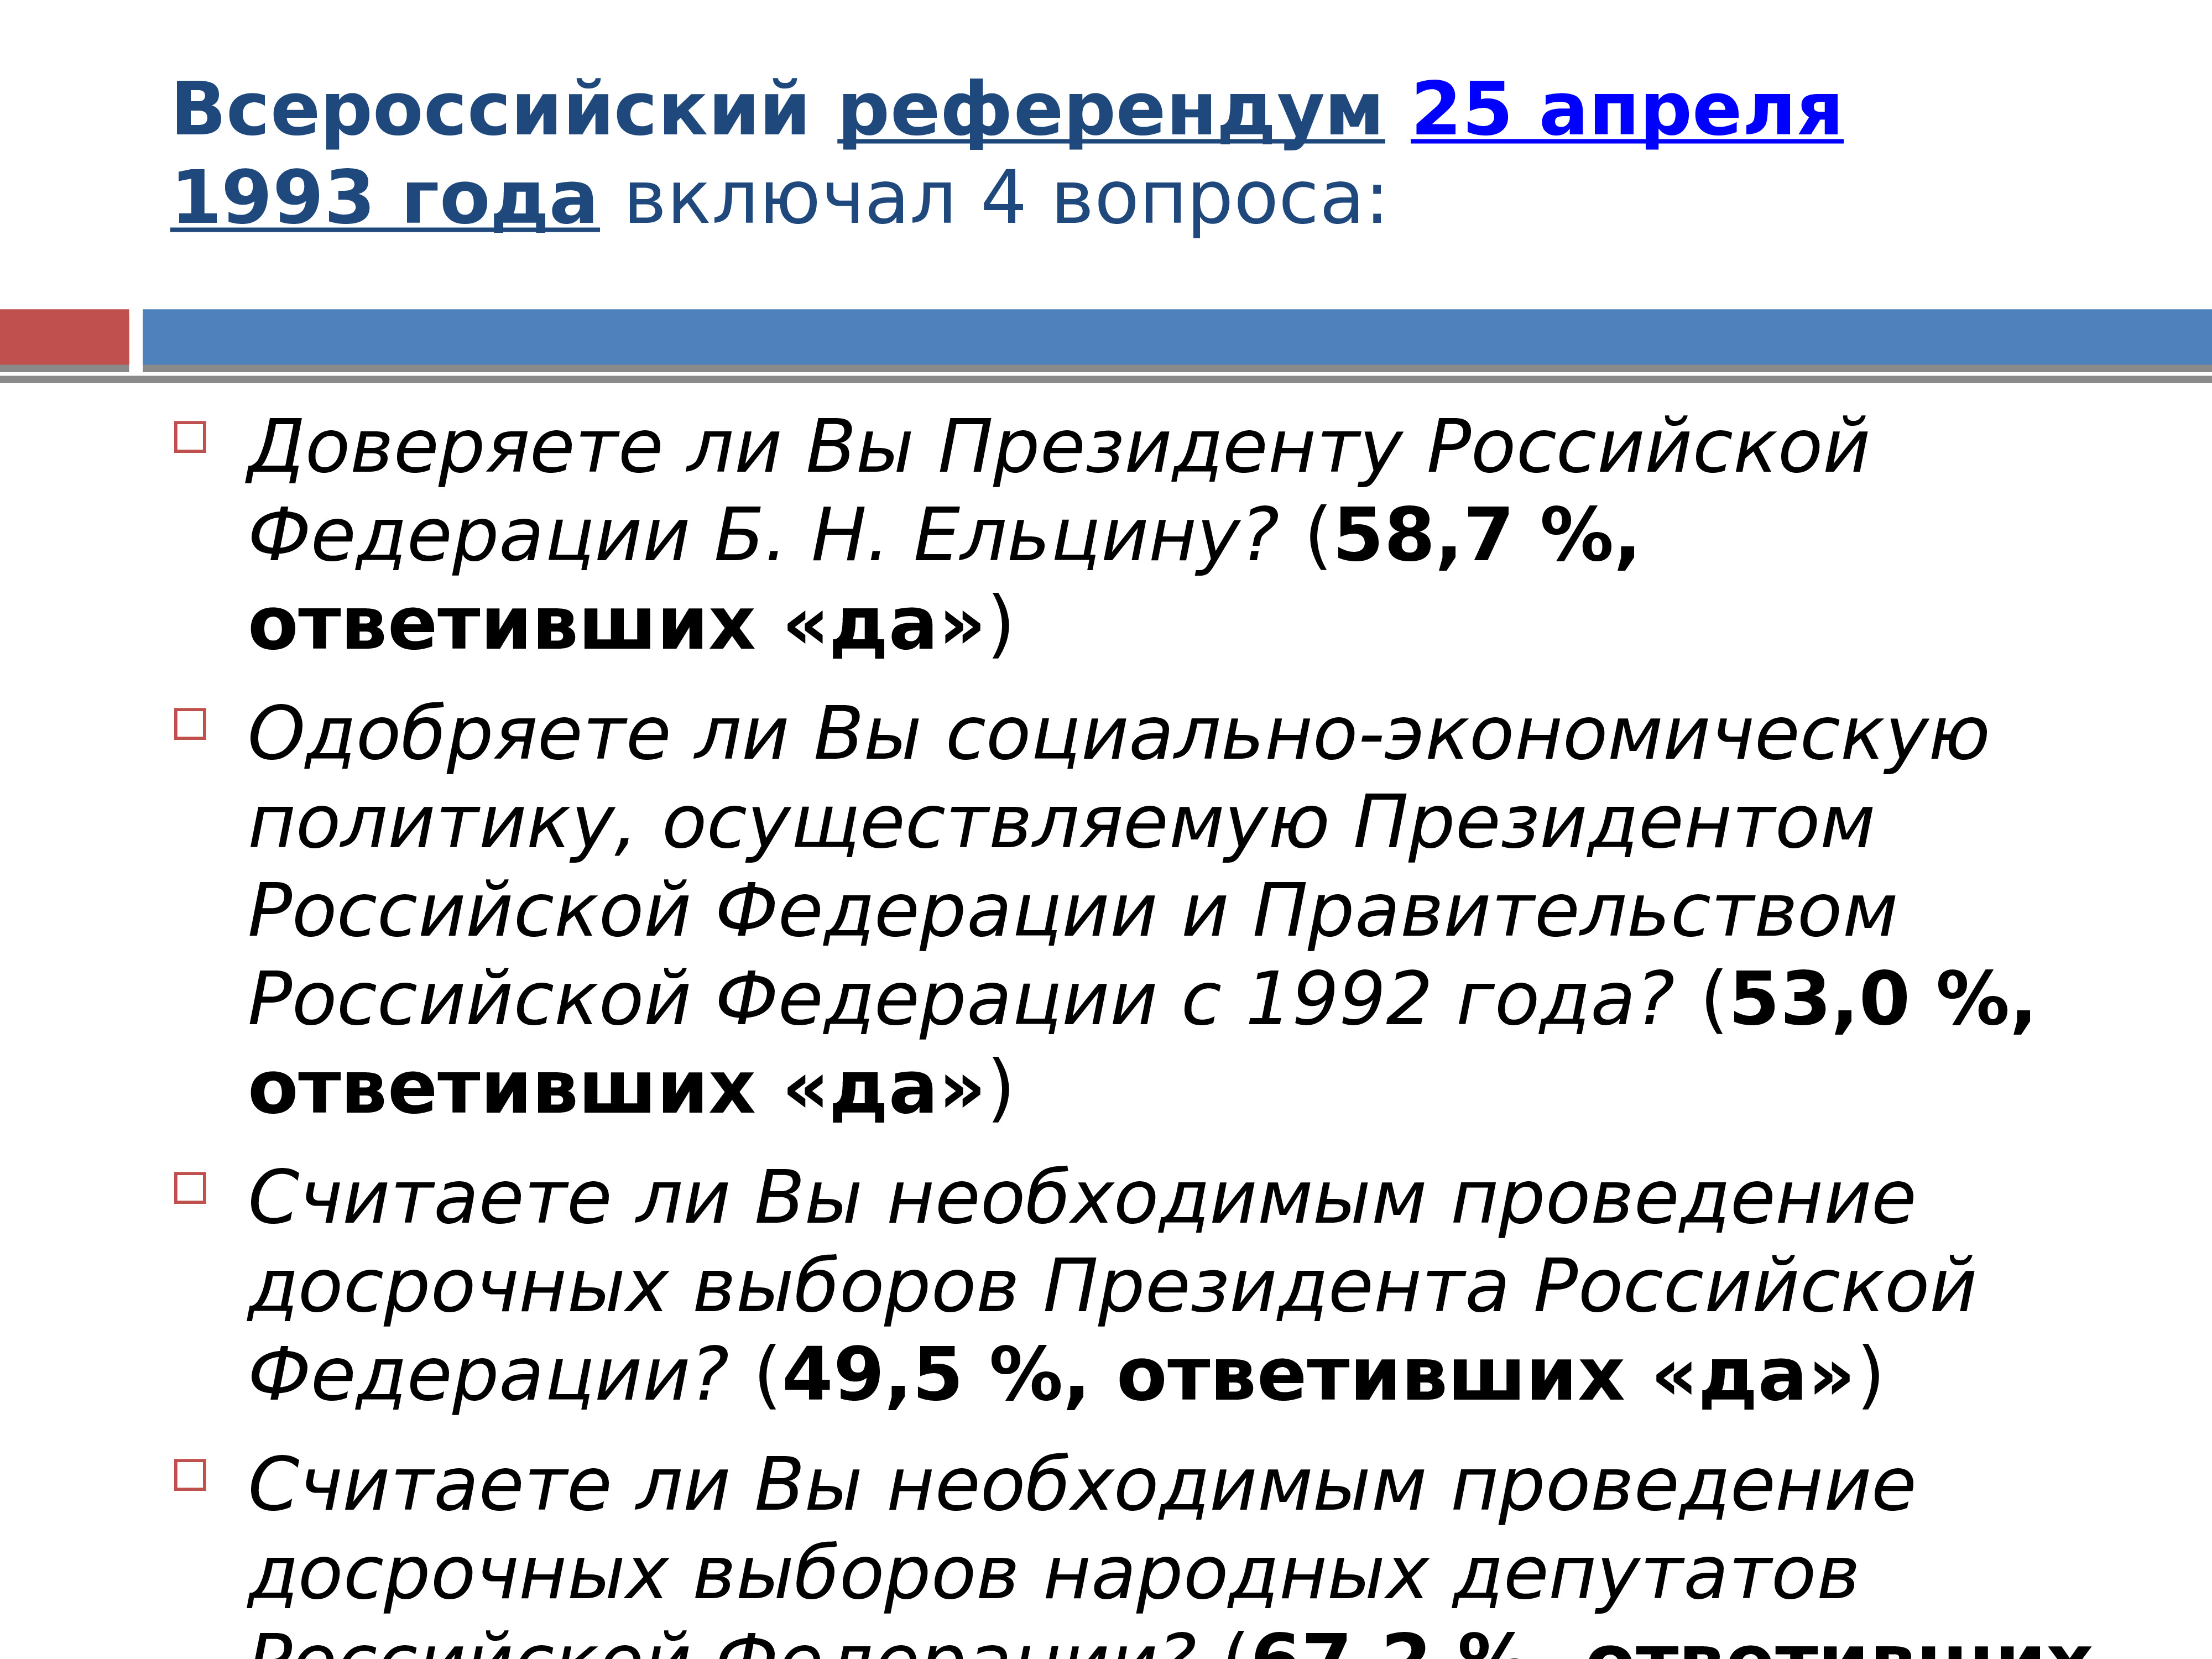 Политический кризис 1993. Политический кризис 1993 года. Всероссийский референдум 25 апреля 1993 года.